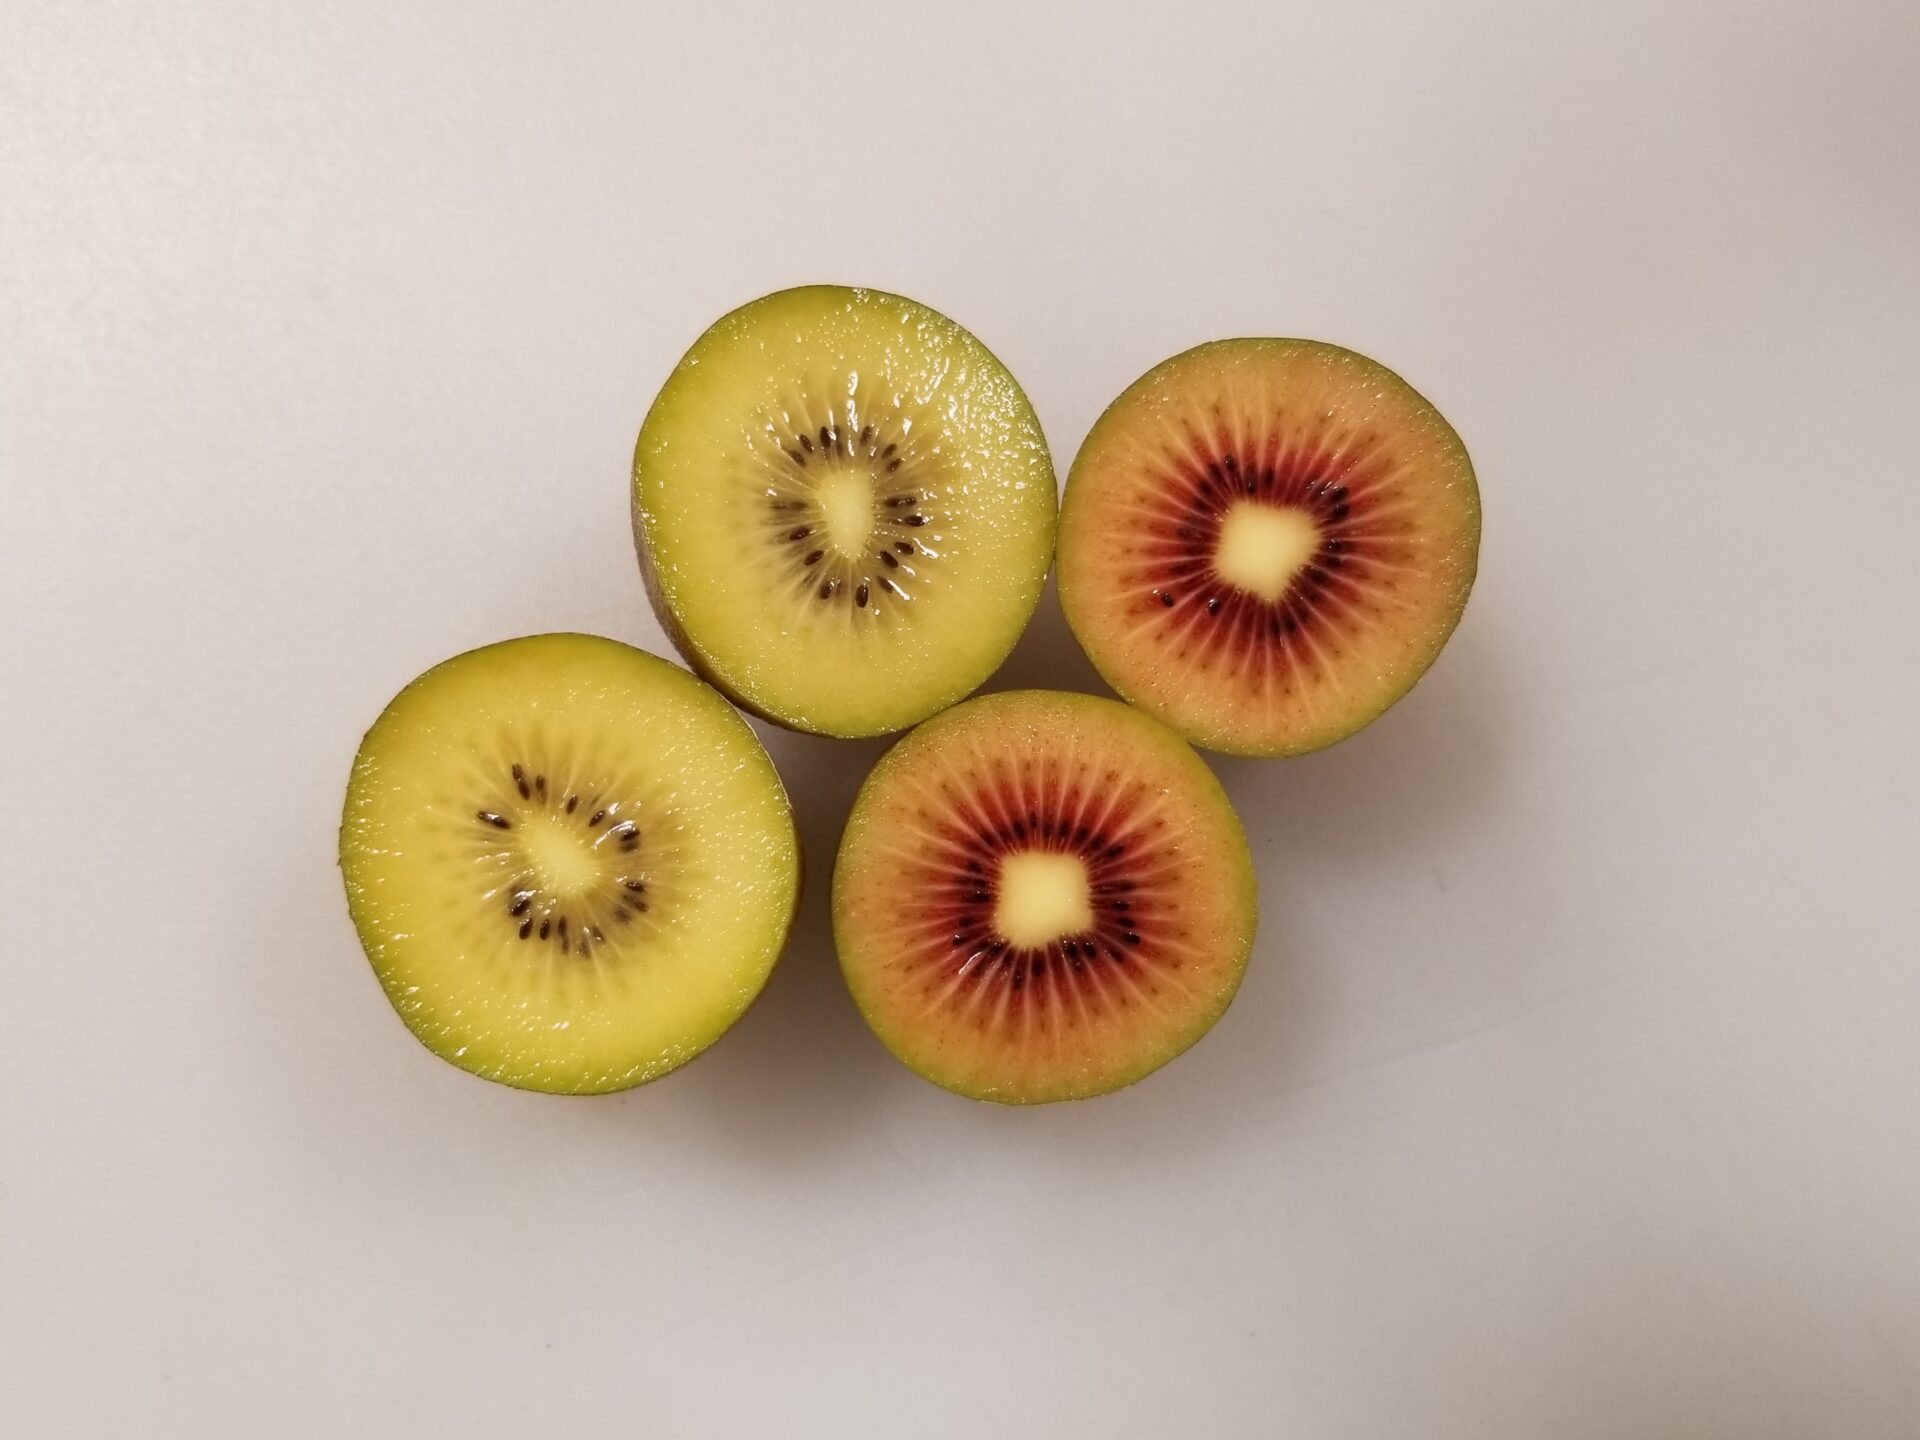 サンゴールドキウイとルビーレッドキウイの果肉の色を比較した写真